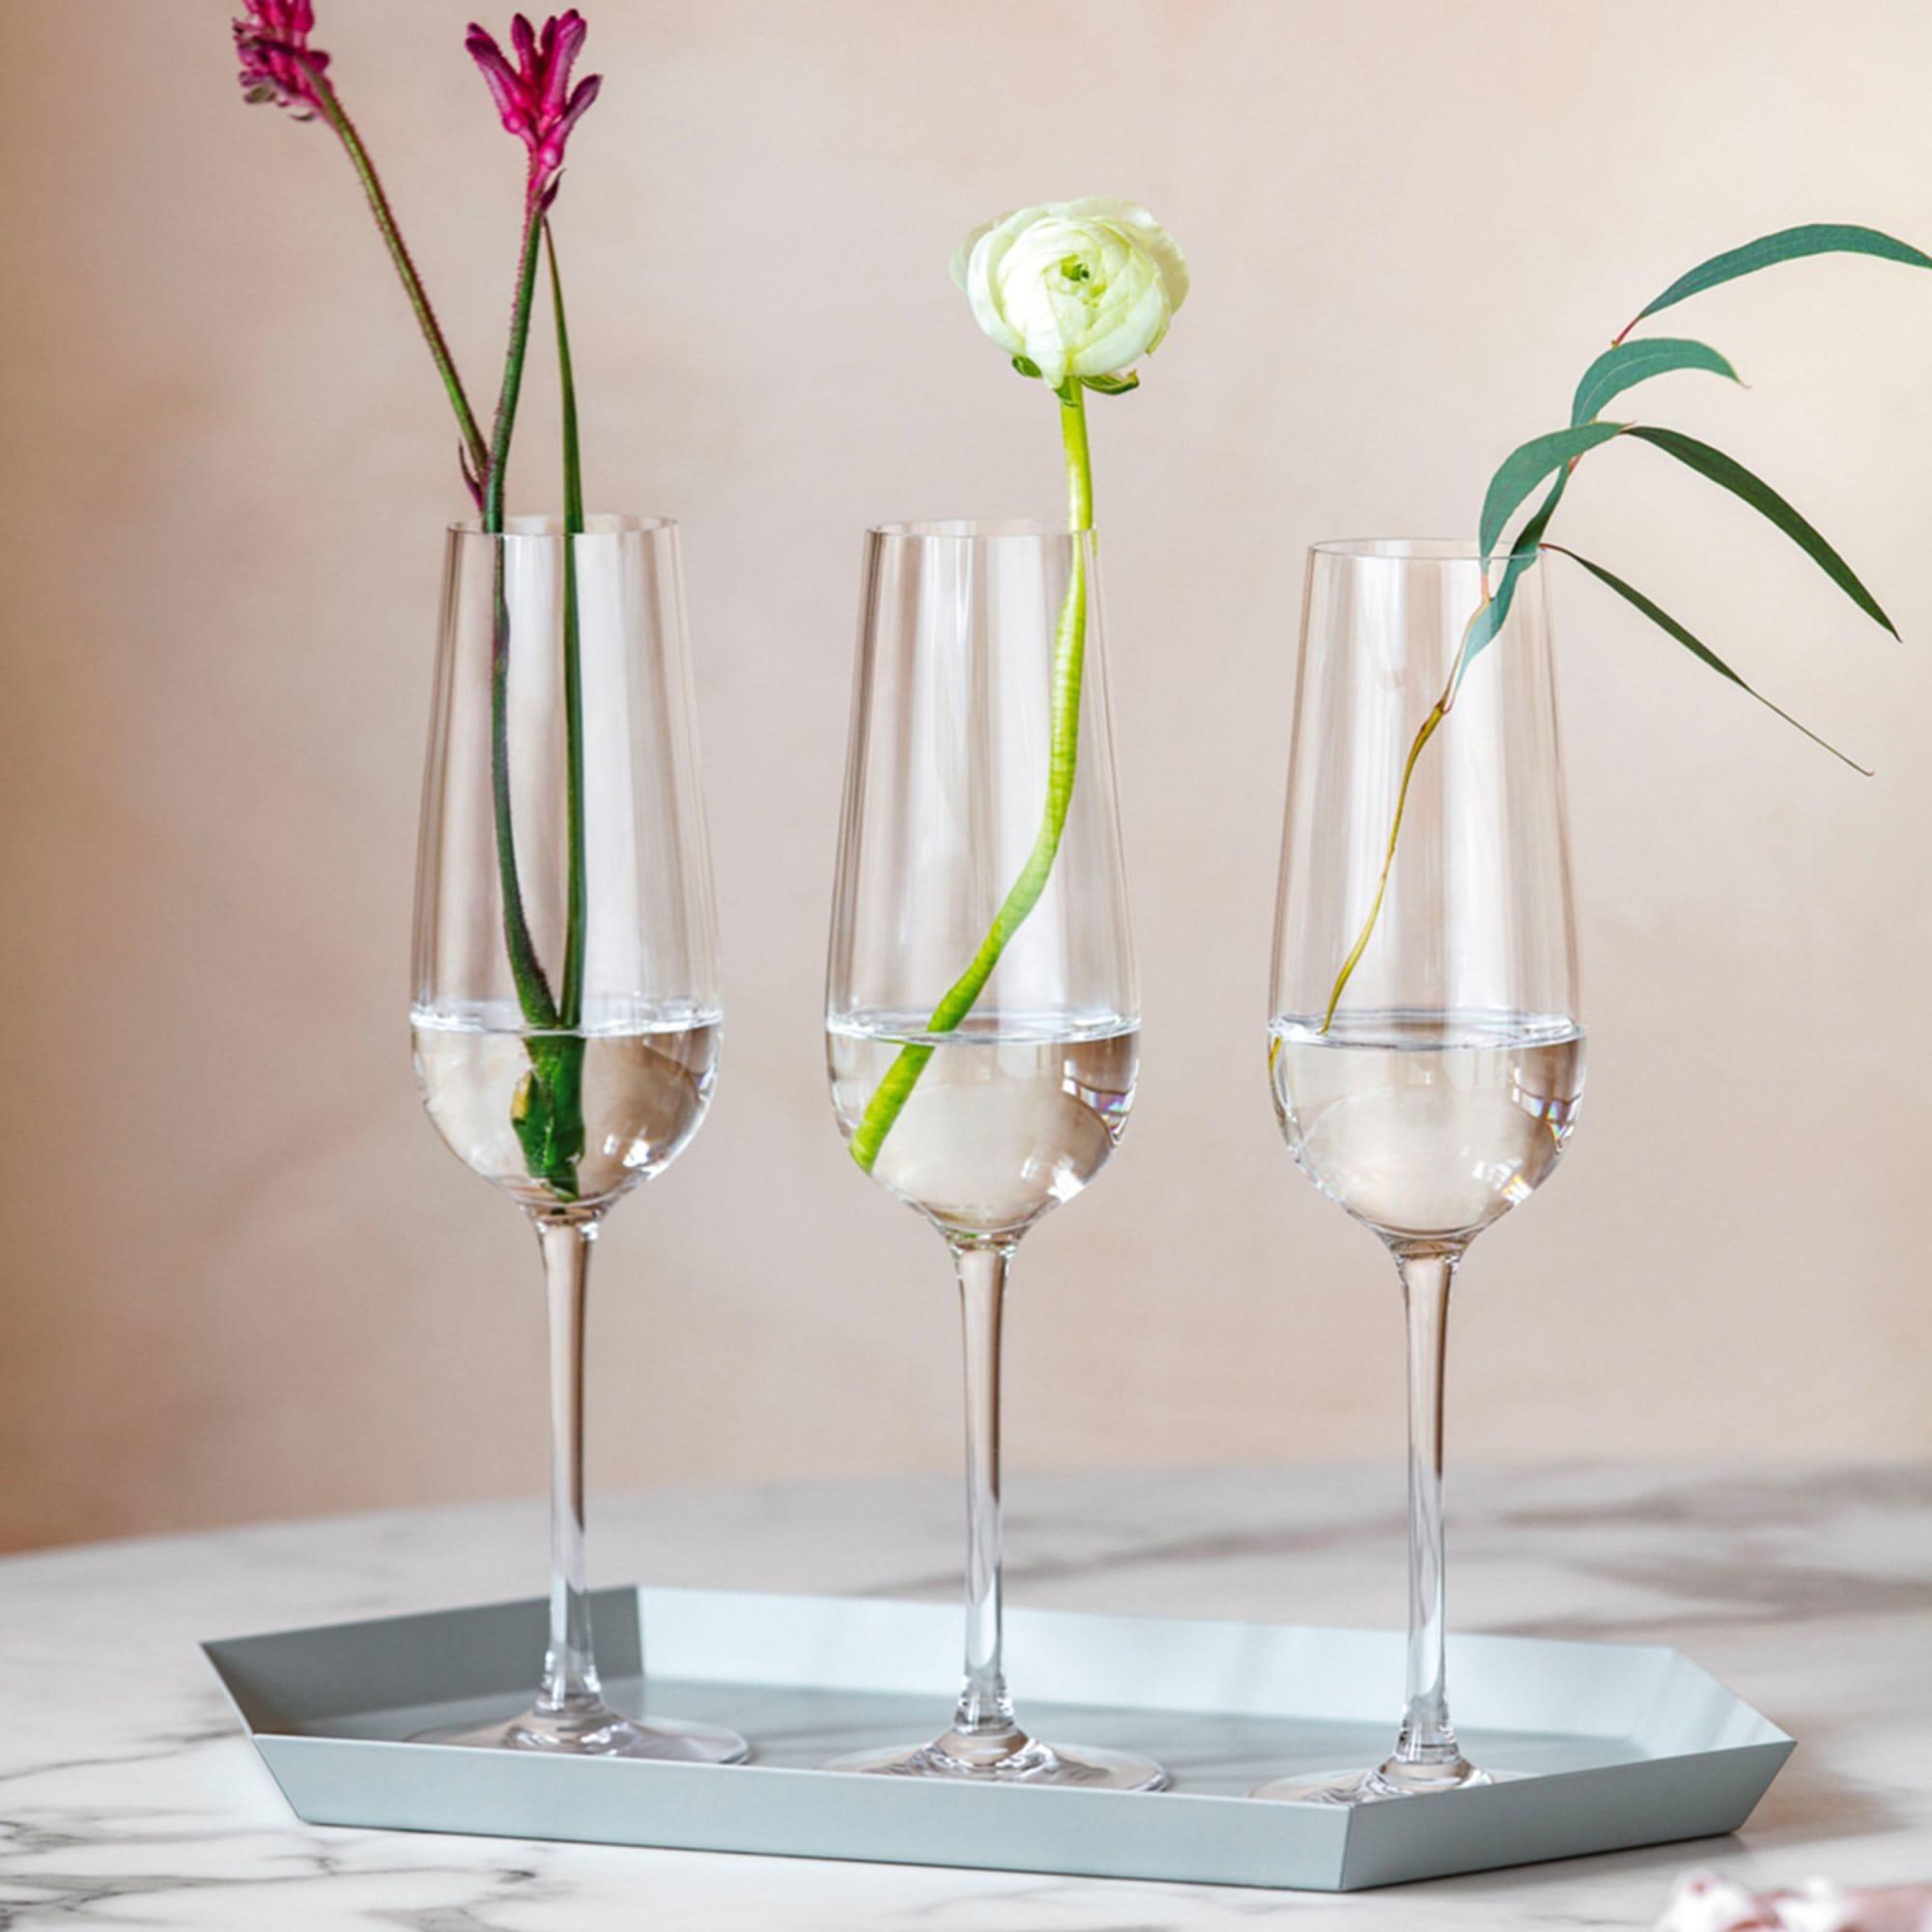 Villeroy & Boch Rose Garden Champagne Flute 120ml Set of 4 Image 4